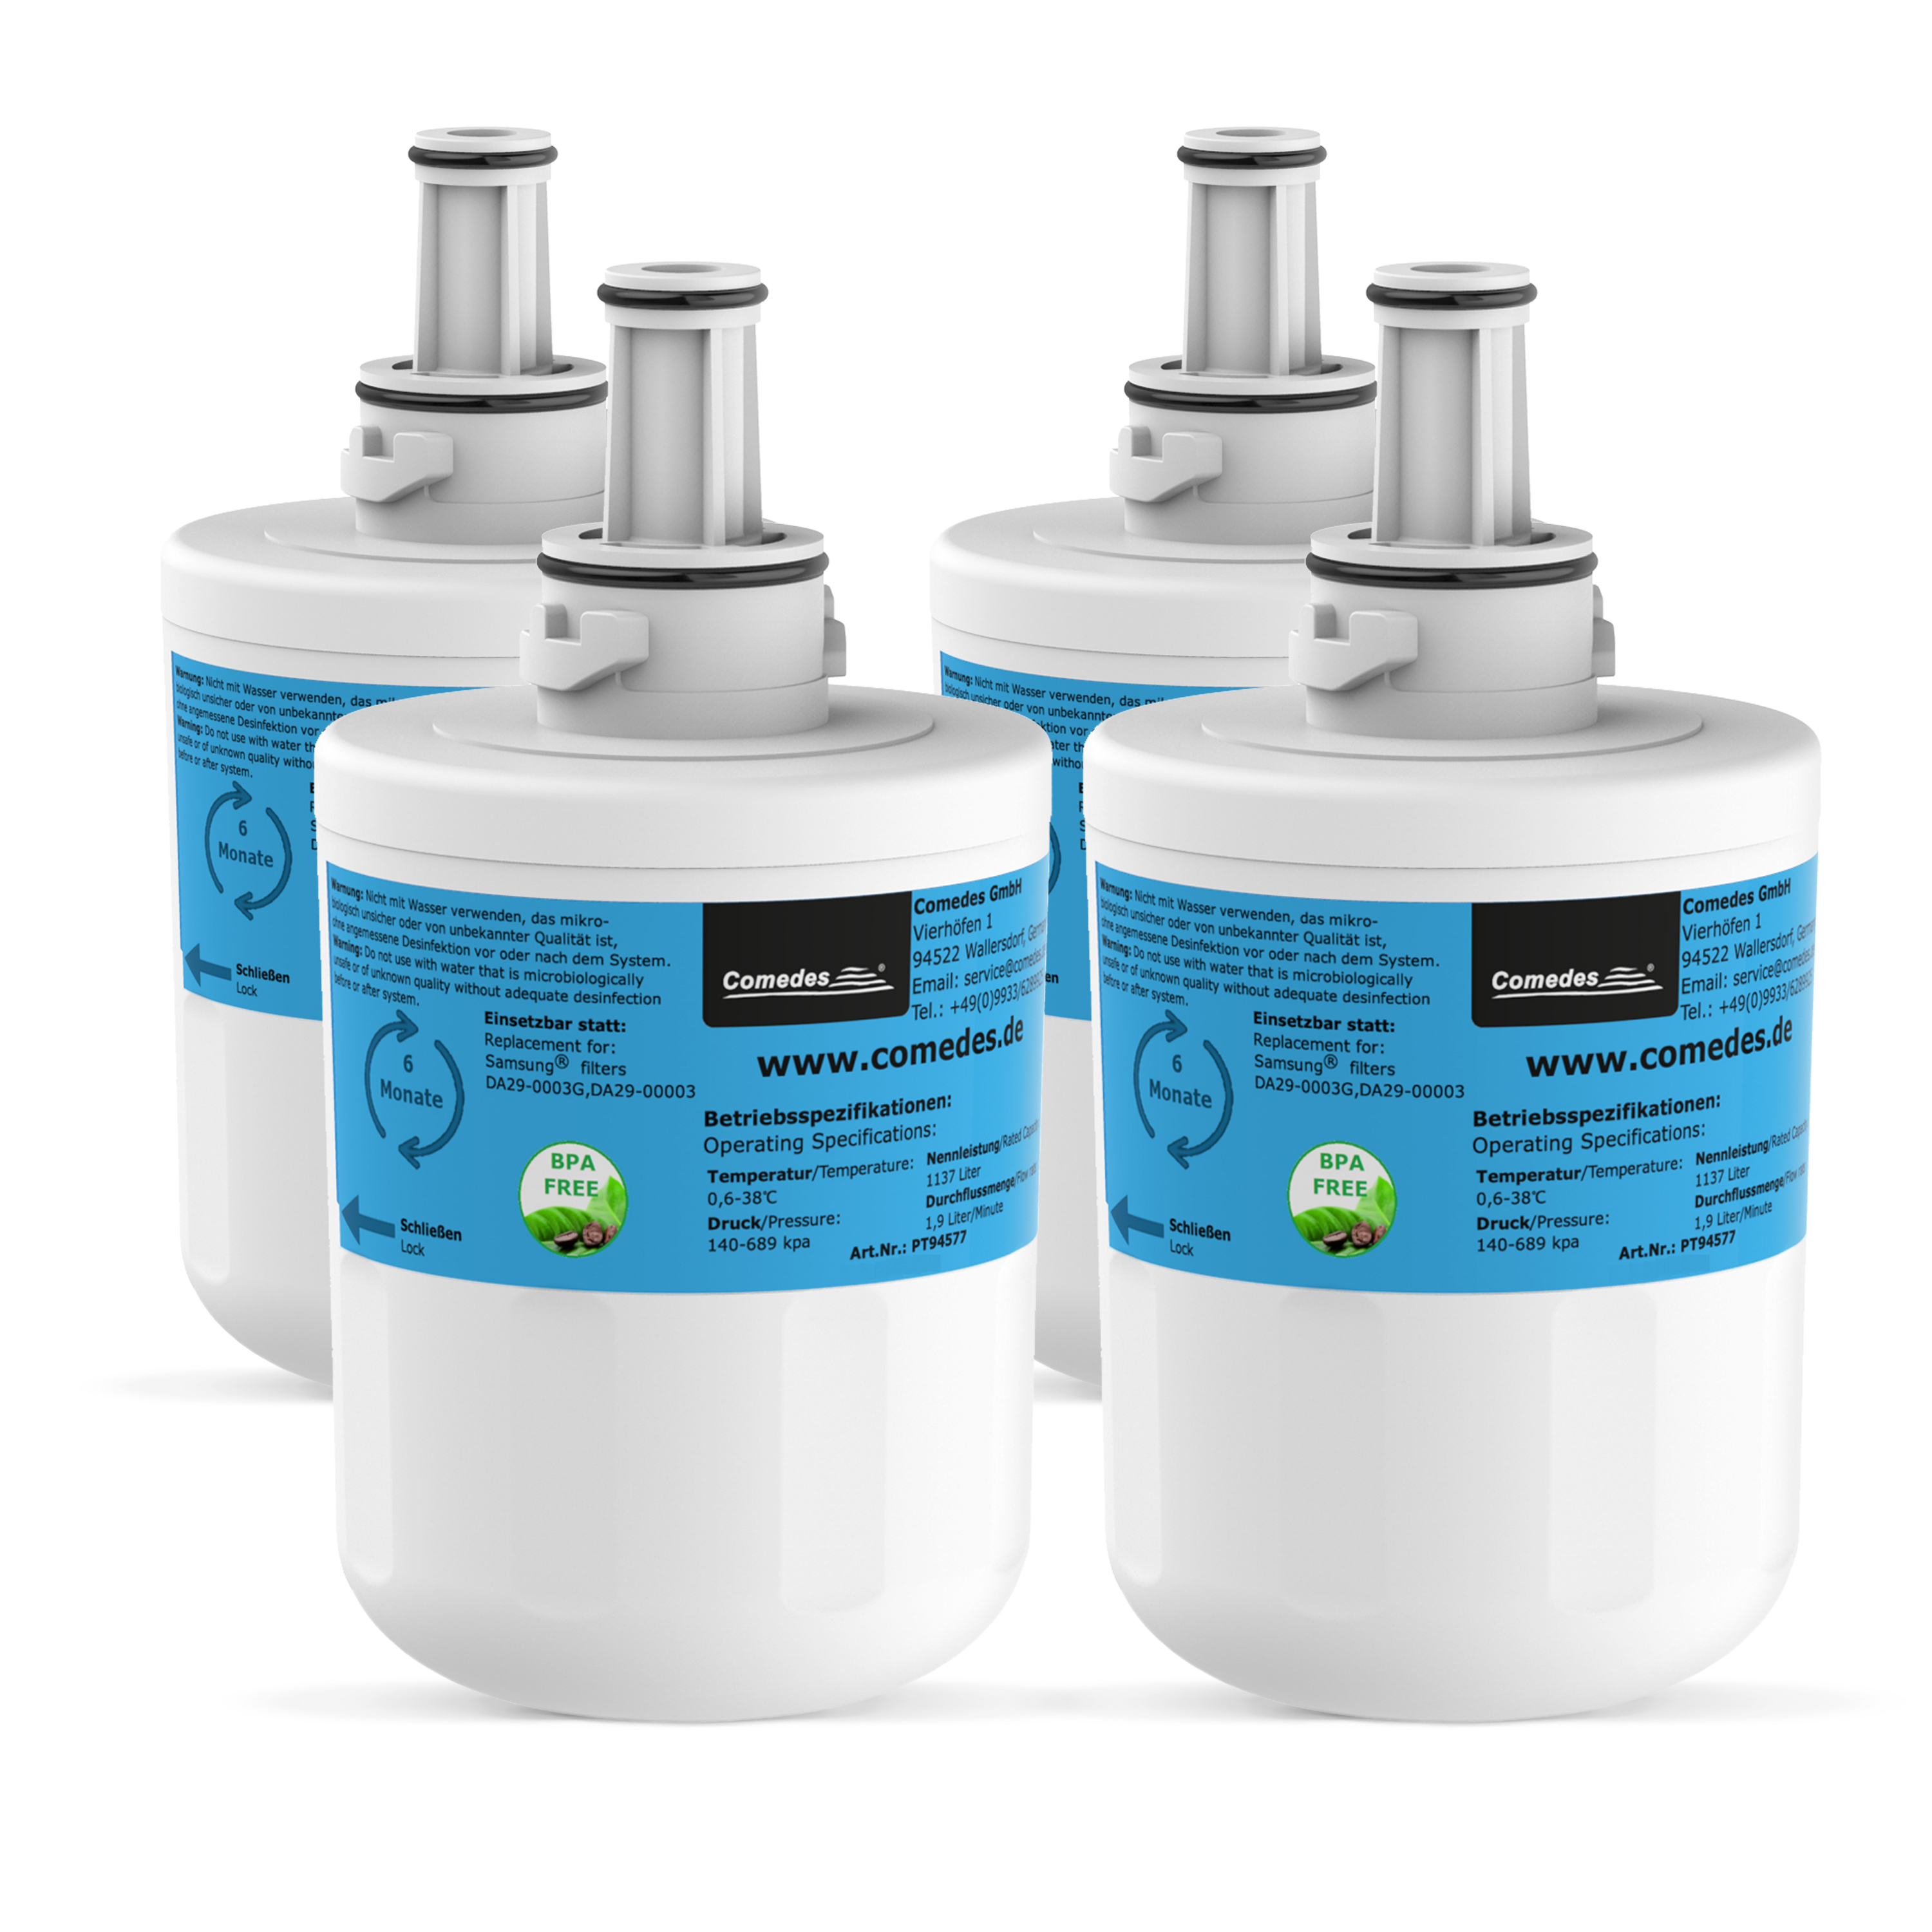 COMEDES 4er Set (78 Samsung passend für mm) Wasserfilter Kühlschränke Filterkartusche Comedes